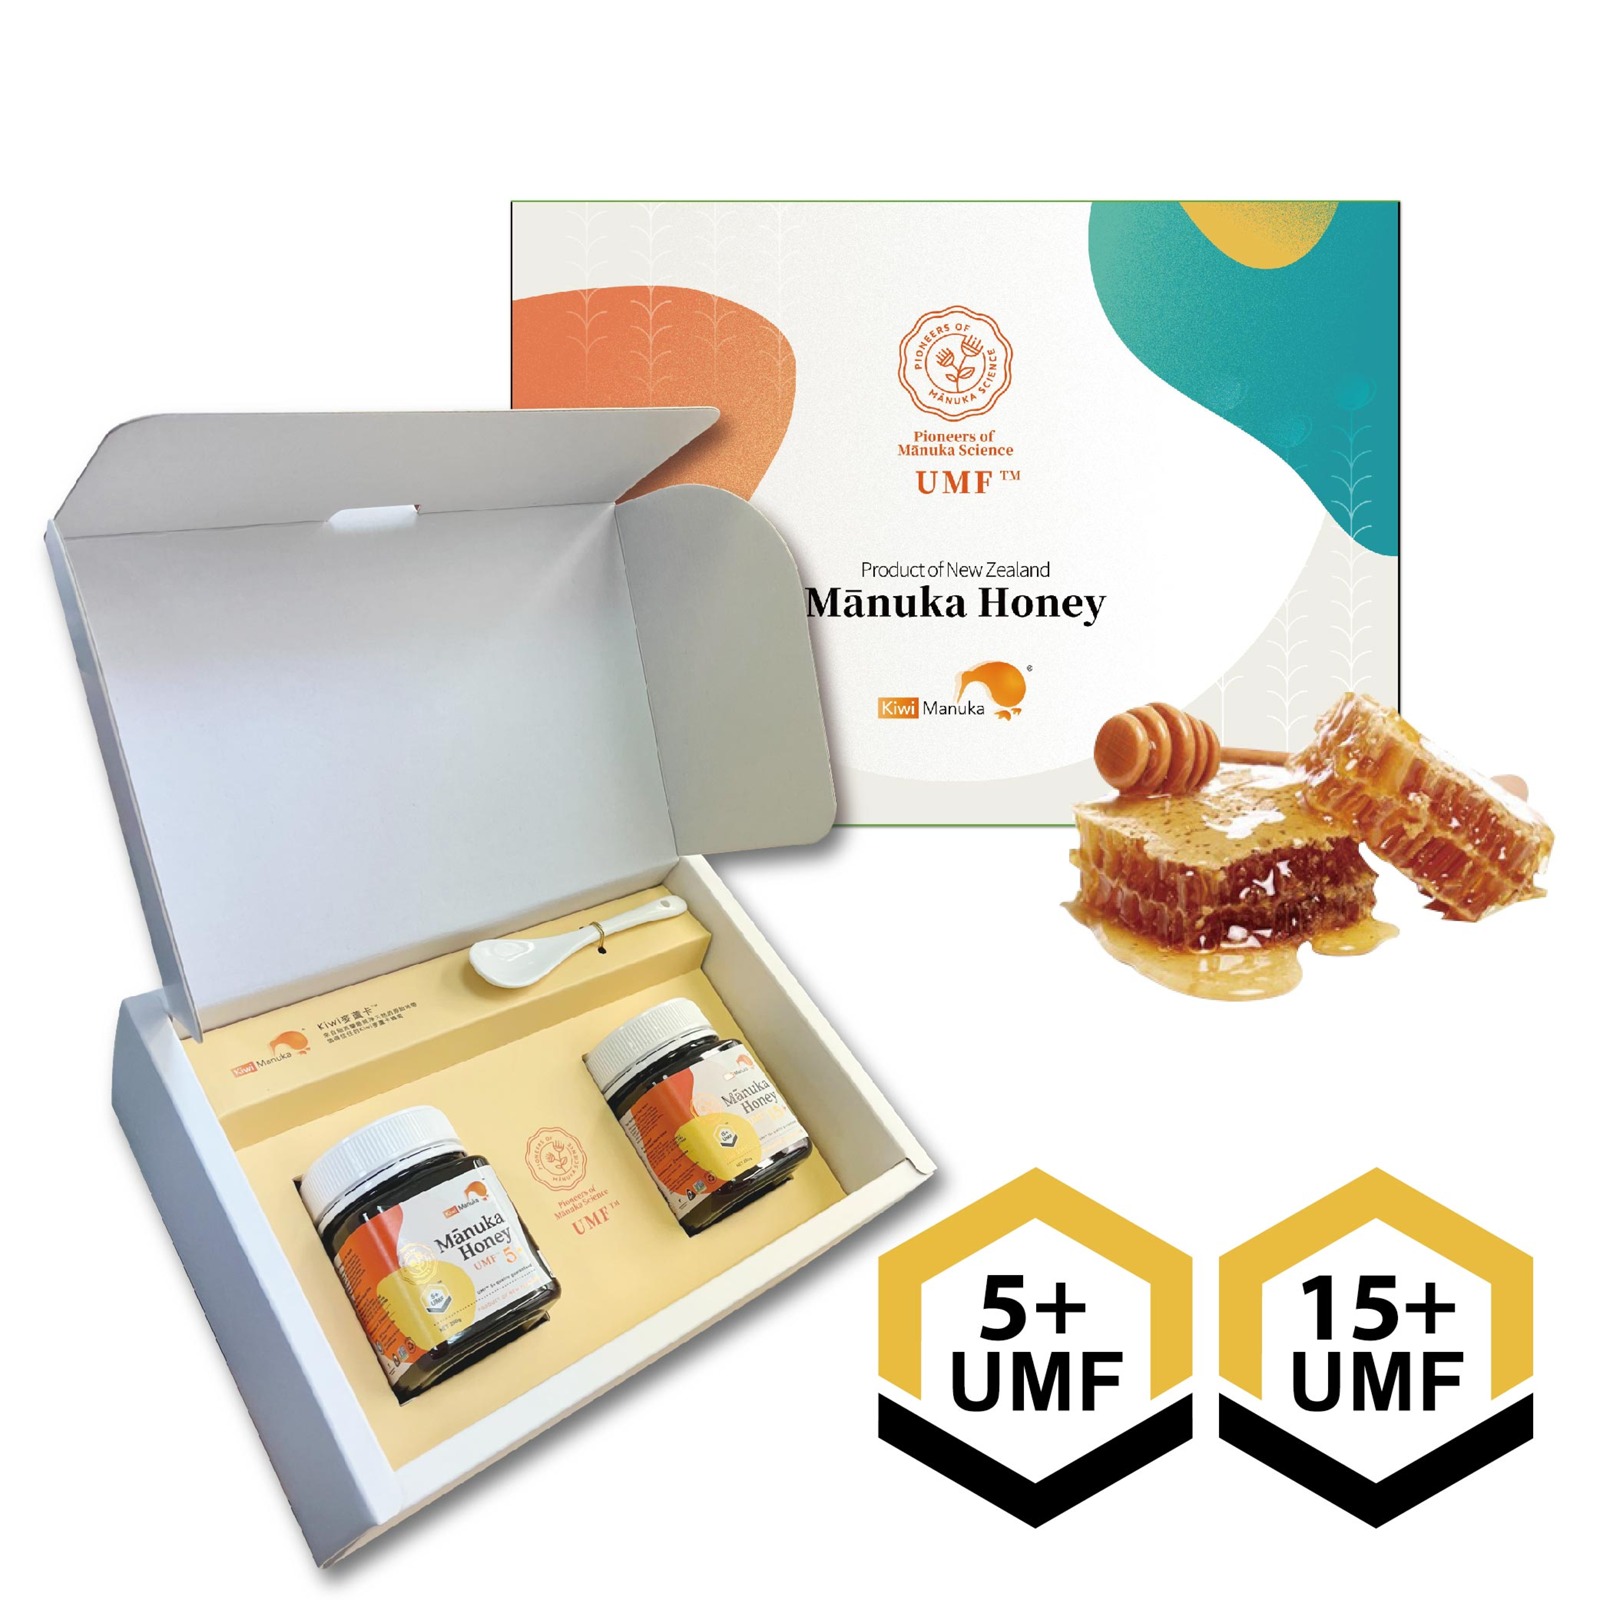 紐西蘭Kiwi麥蘆卡蜂蜜禮盒(UMF 5+一入 15+一入)